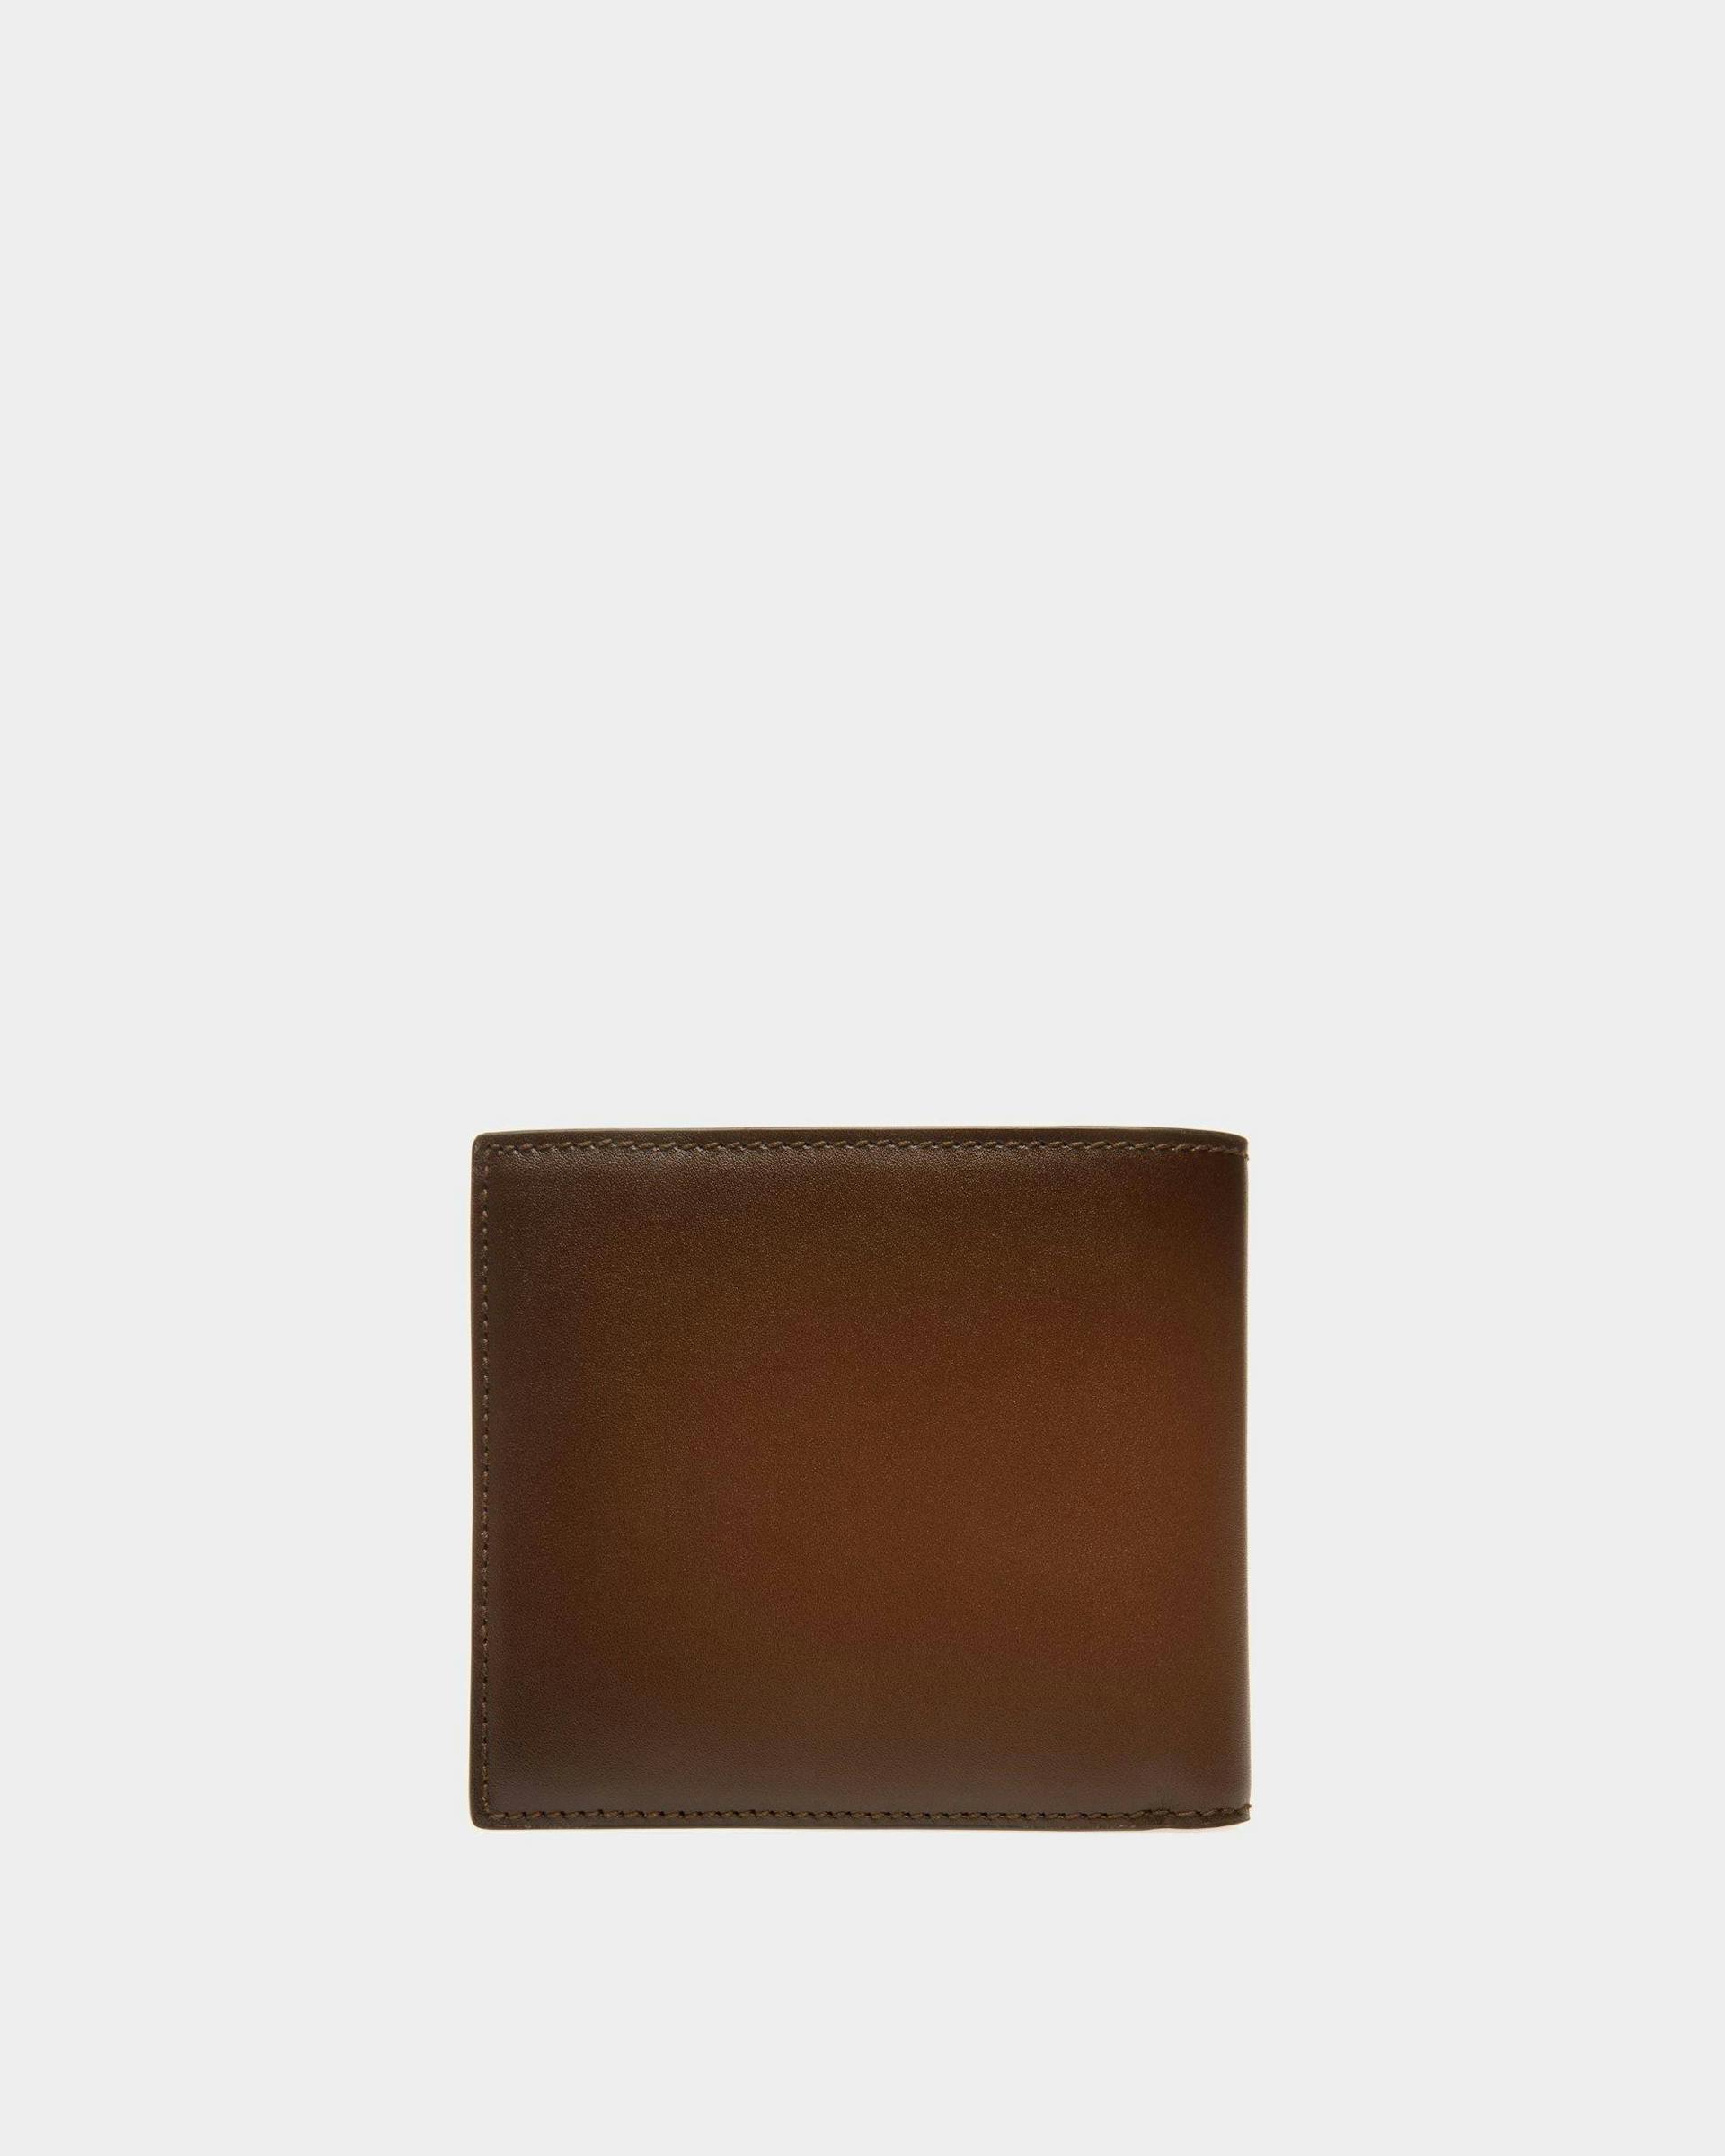 Speciale Bi-fold Wallet In Brown Leather - Men's - Bally - 02